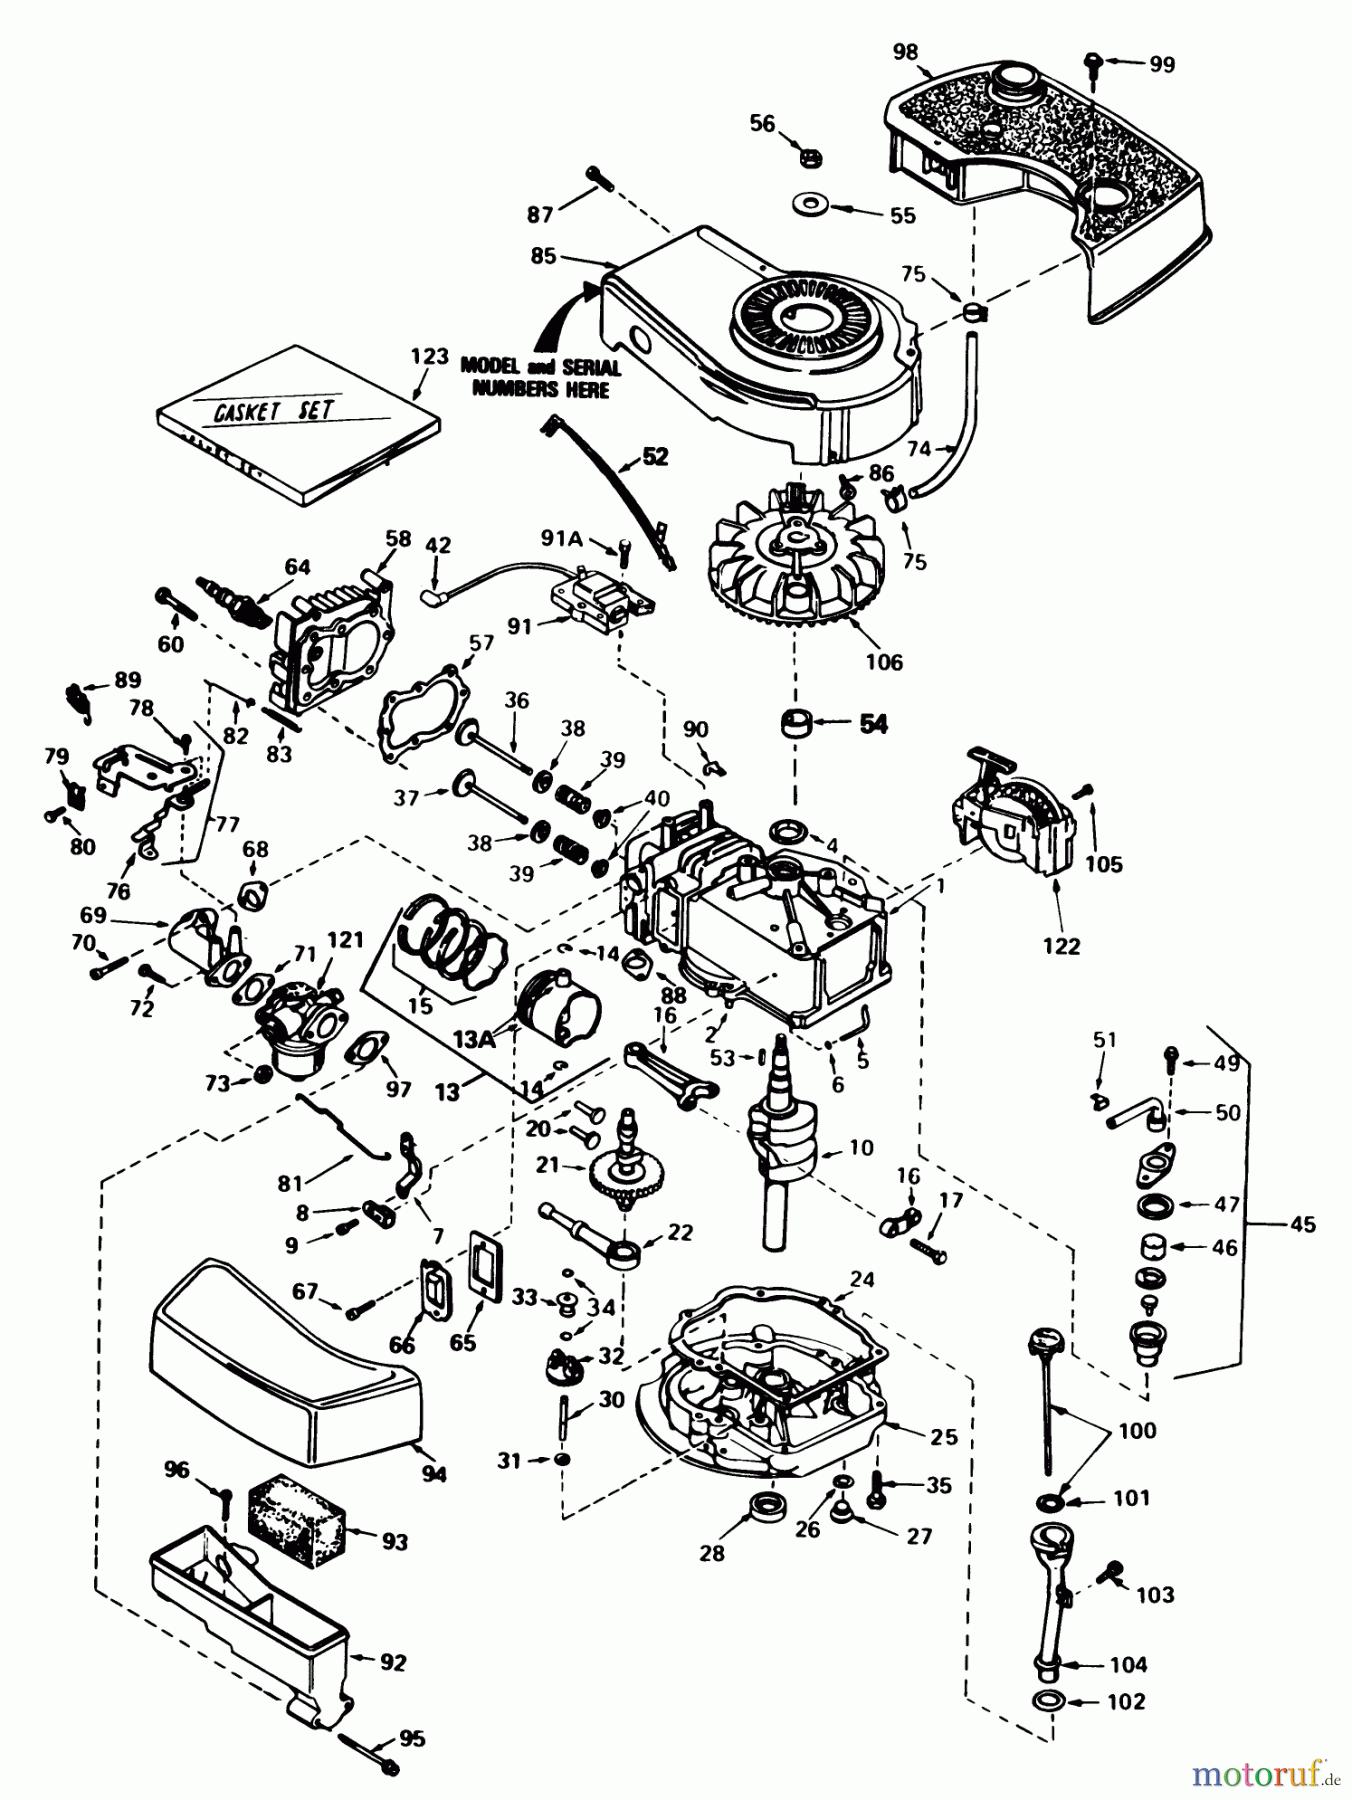  Toro Neu Mowers, Walk-Behind Seite 1 20705 - Toro Lawnmower, 1983 (3000001-3999999) ENGINE TECUMSEH MODEL NO. TNT 100-10086E